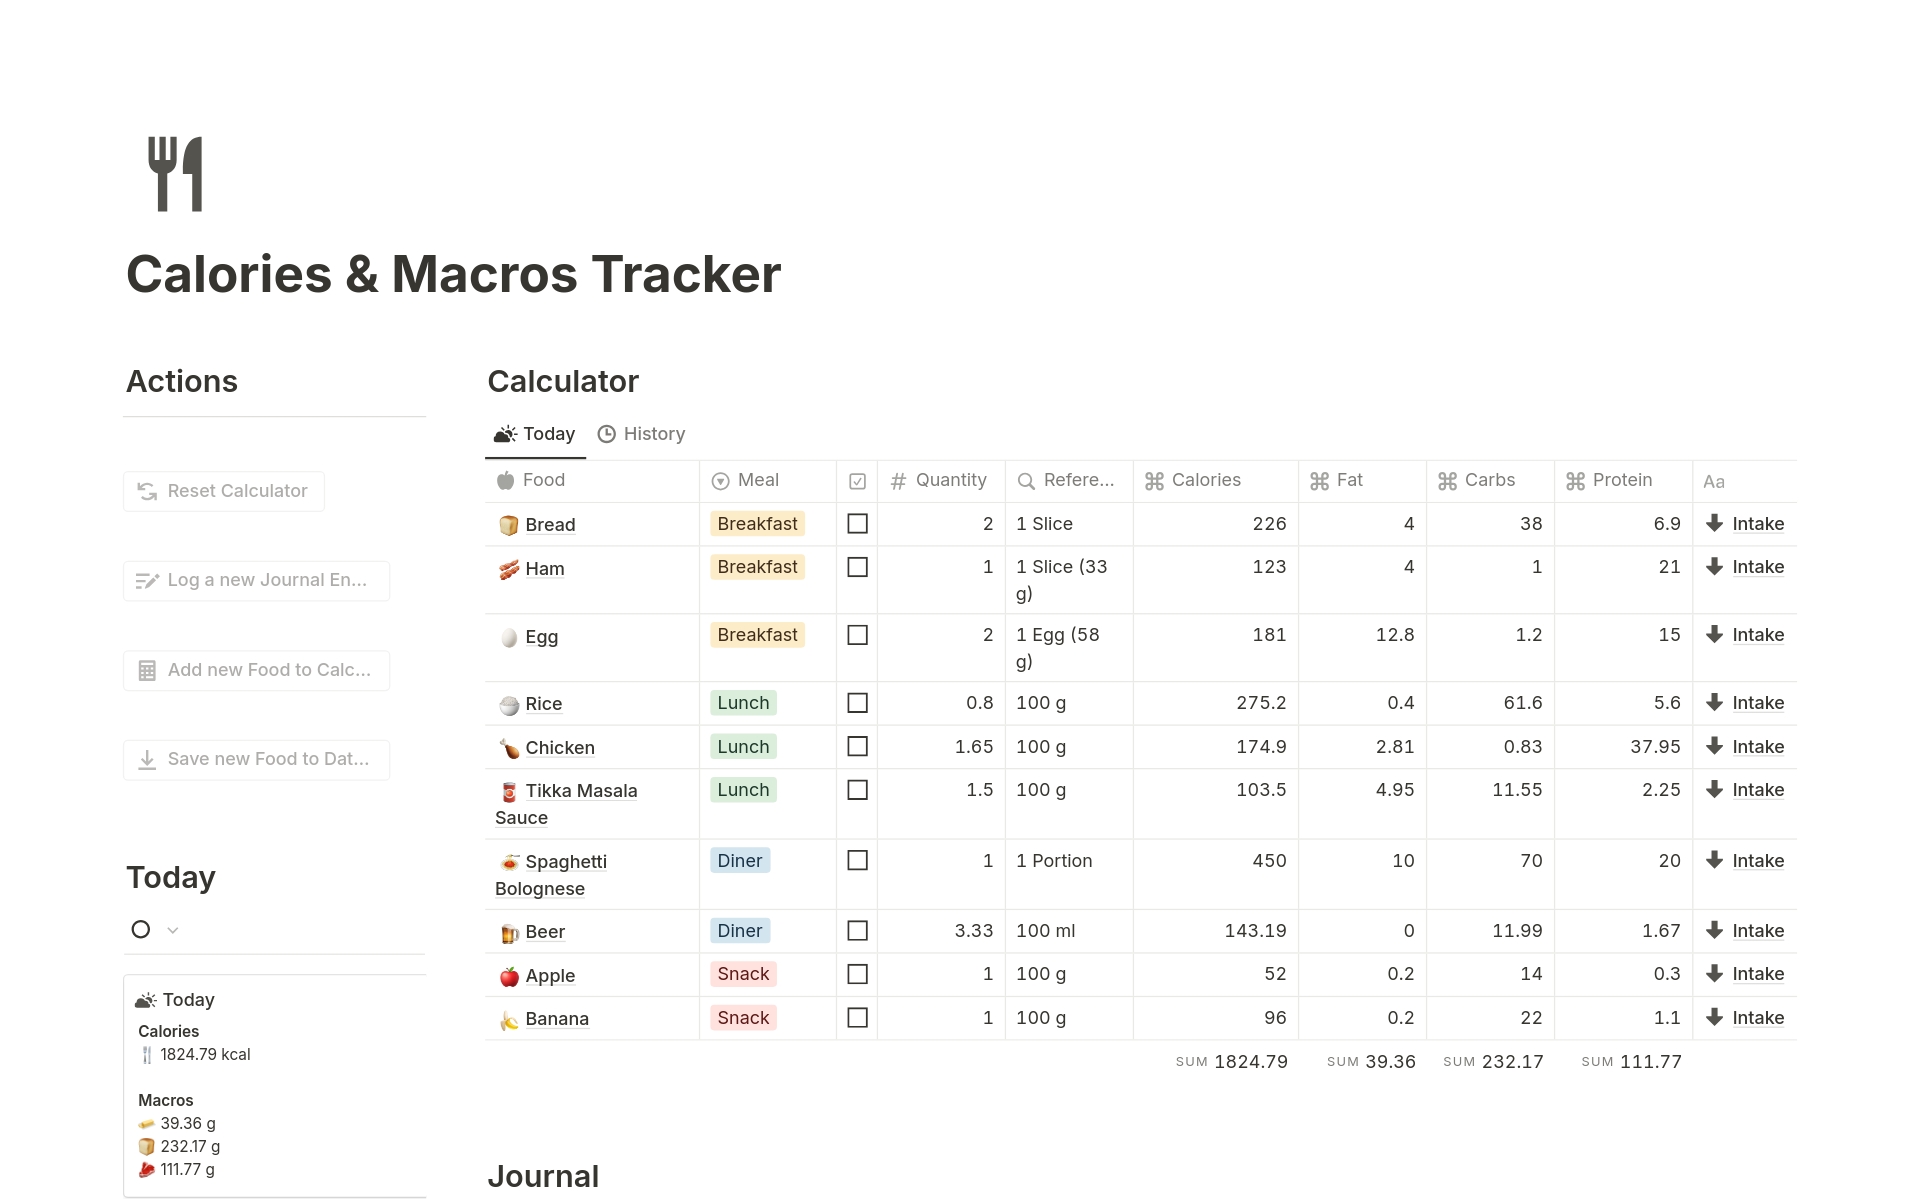 Uma prévia do modelo para Calories & Macros Tracker